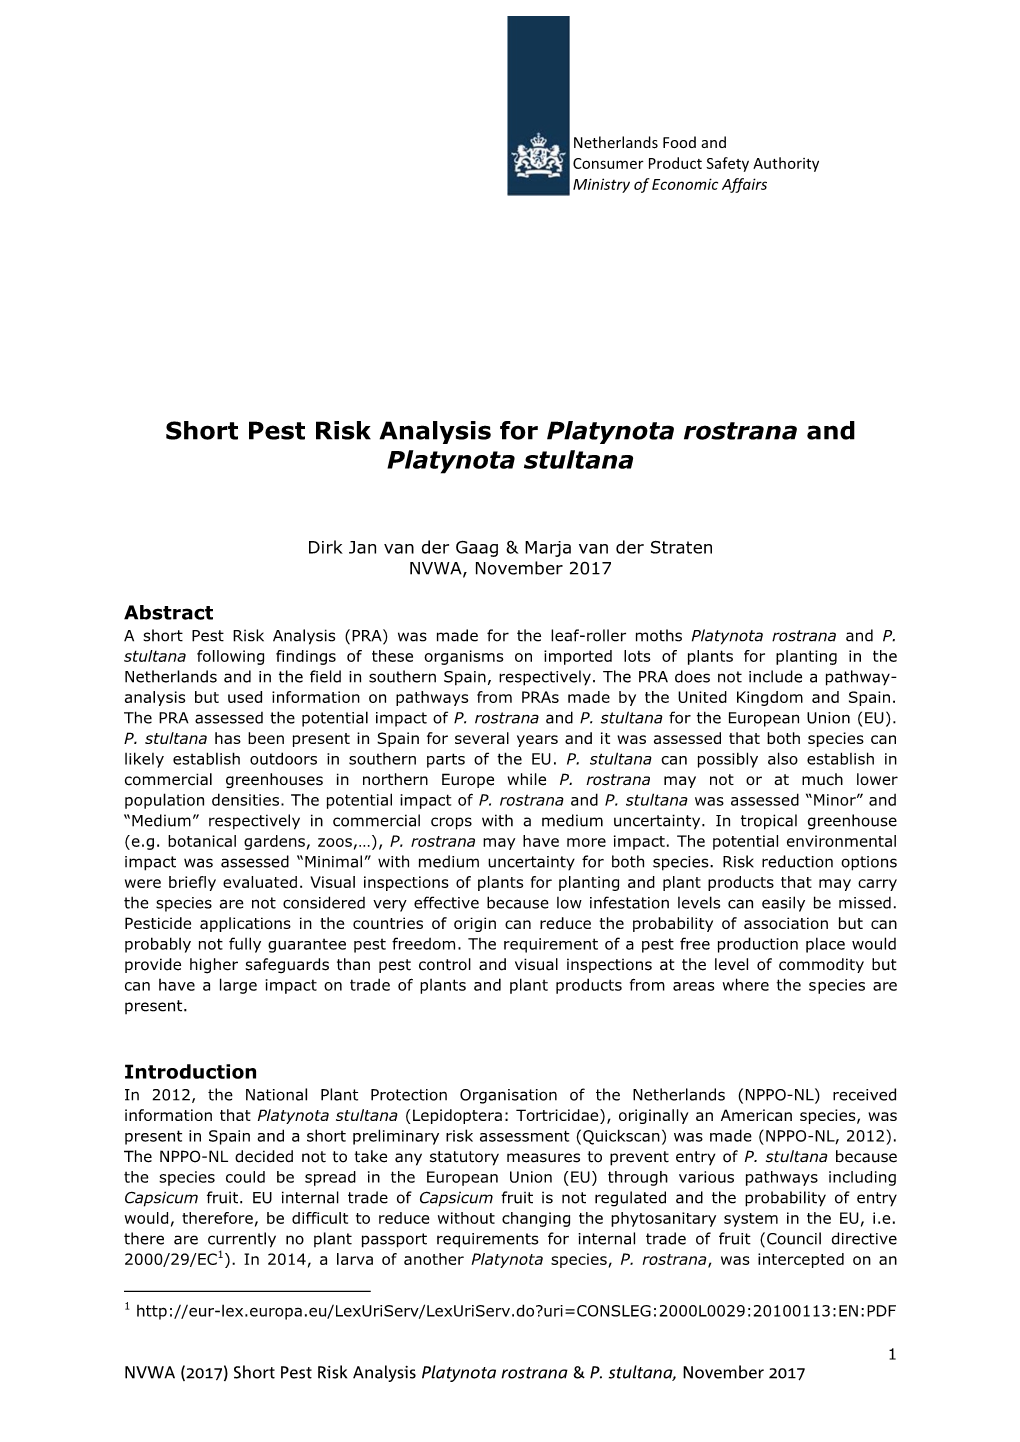 Short Pest Risk Analysis for Platynota Rostrana and Platynota Stultana